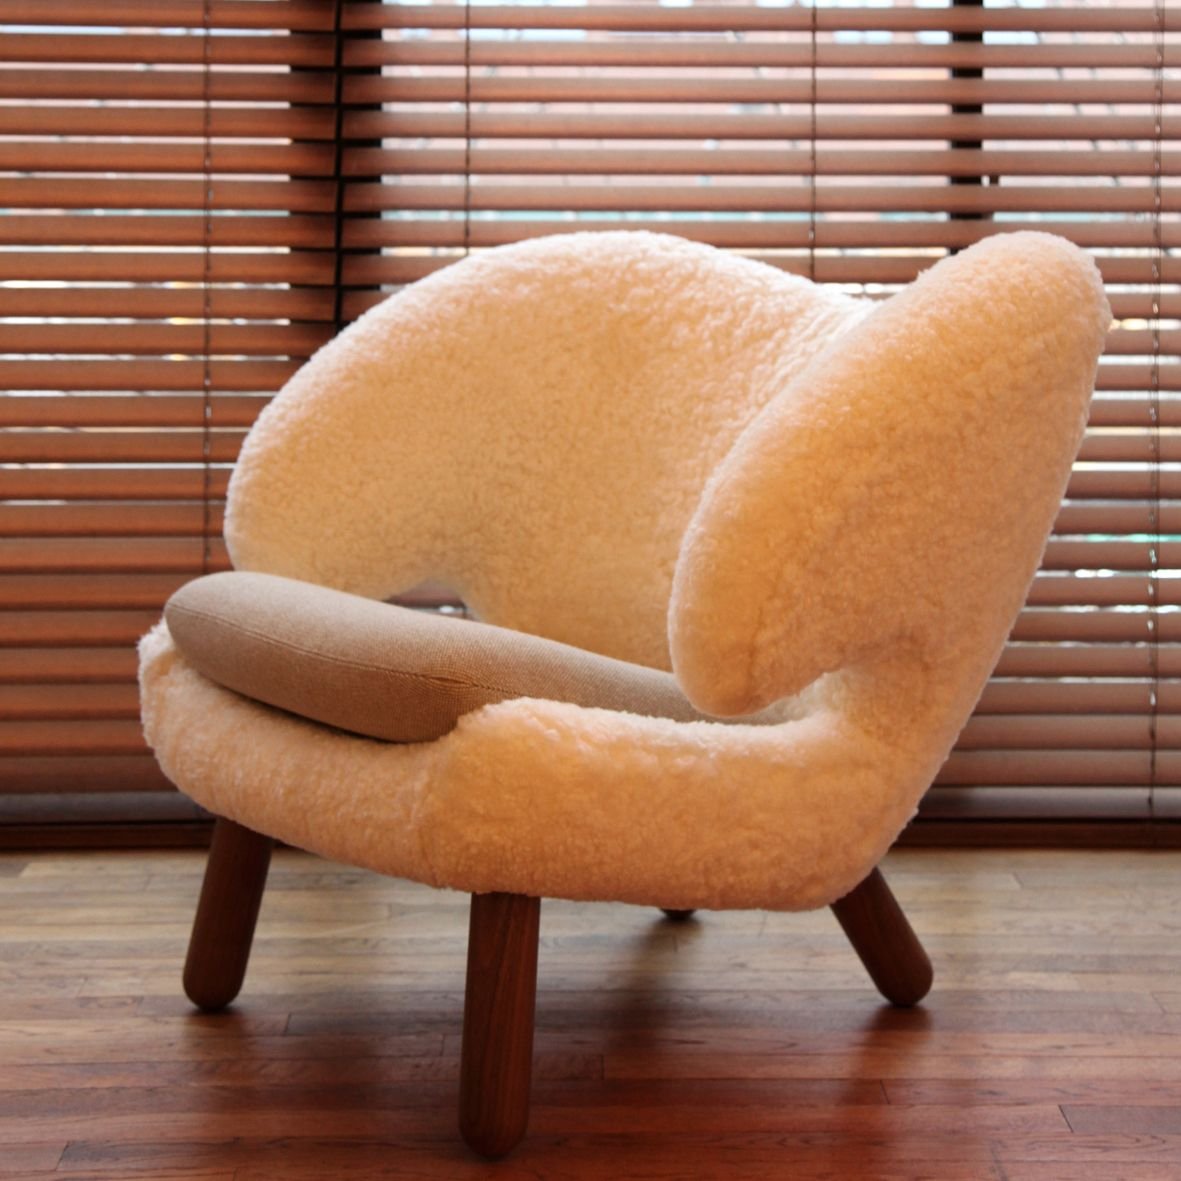 Мягкие кресла магазин. Кресло Pelican (1940). Финн Юль кресло Пеликан. Мягкое уютное кресло. Маленькие стильные кресла.